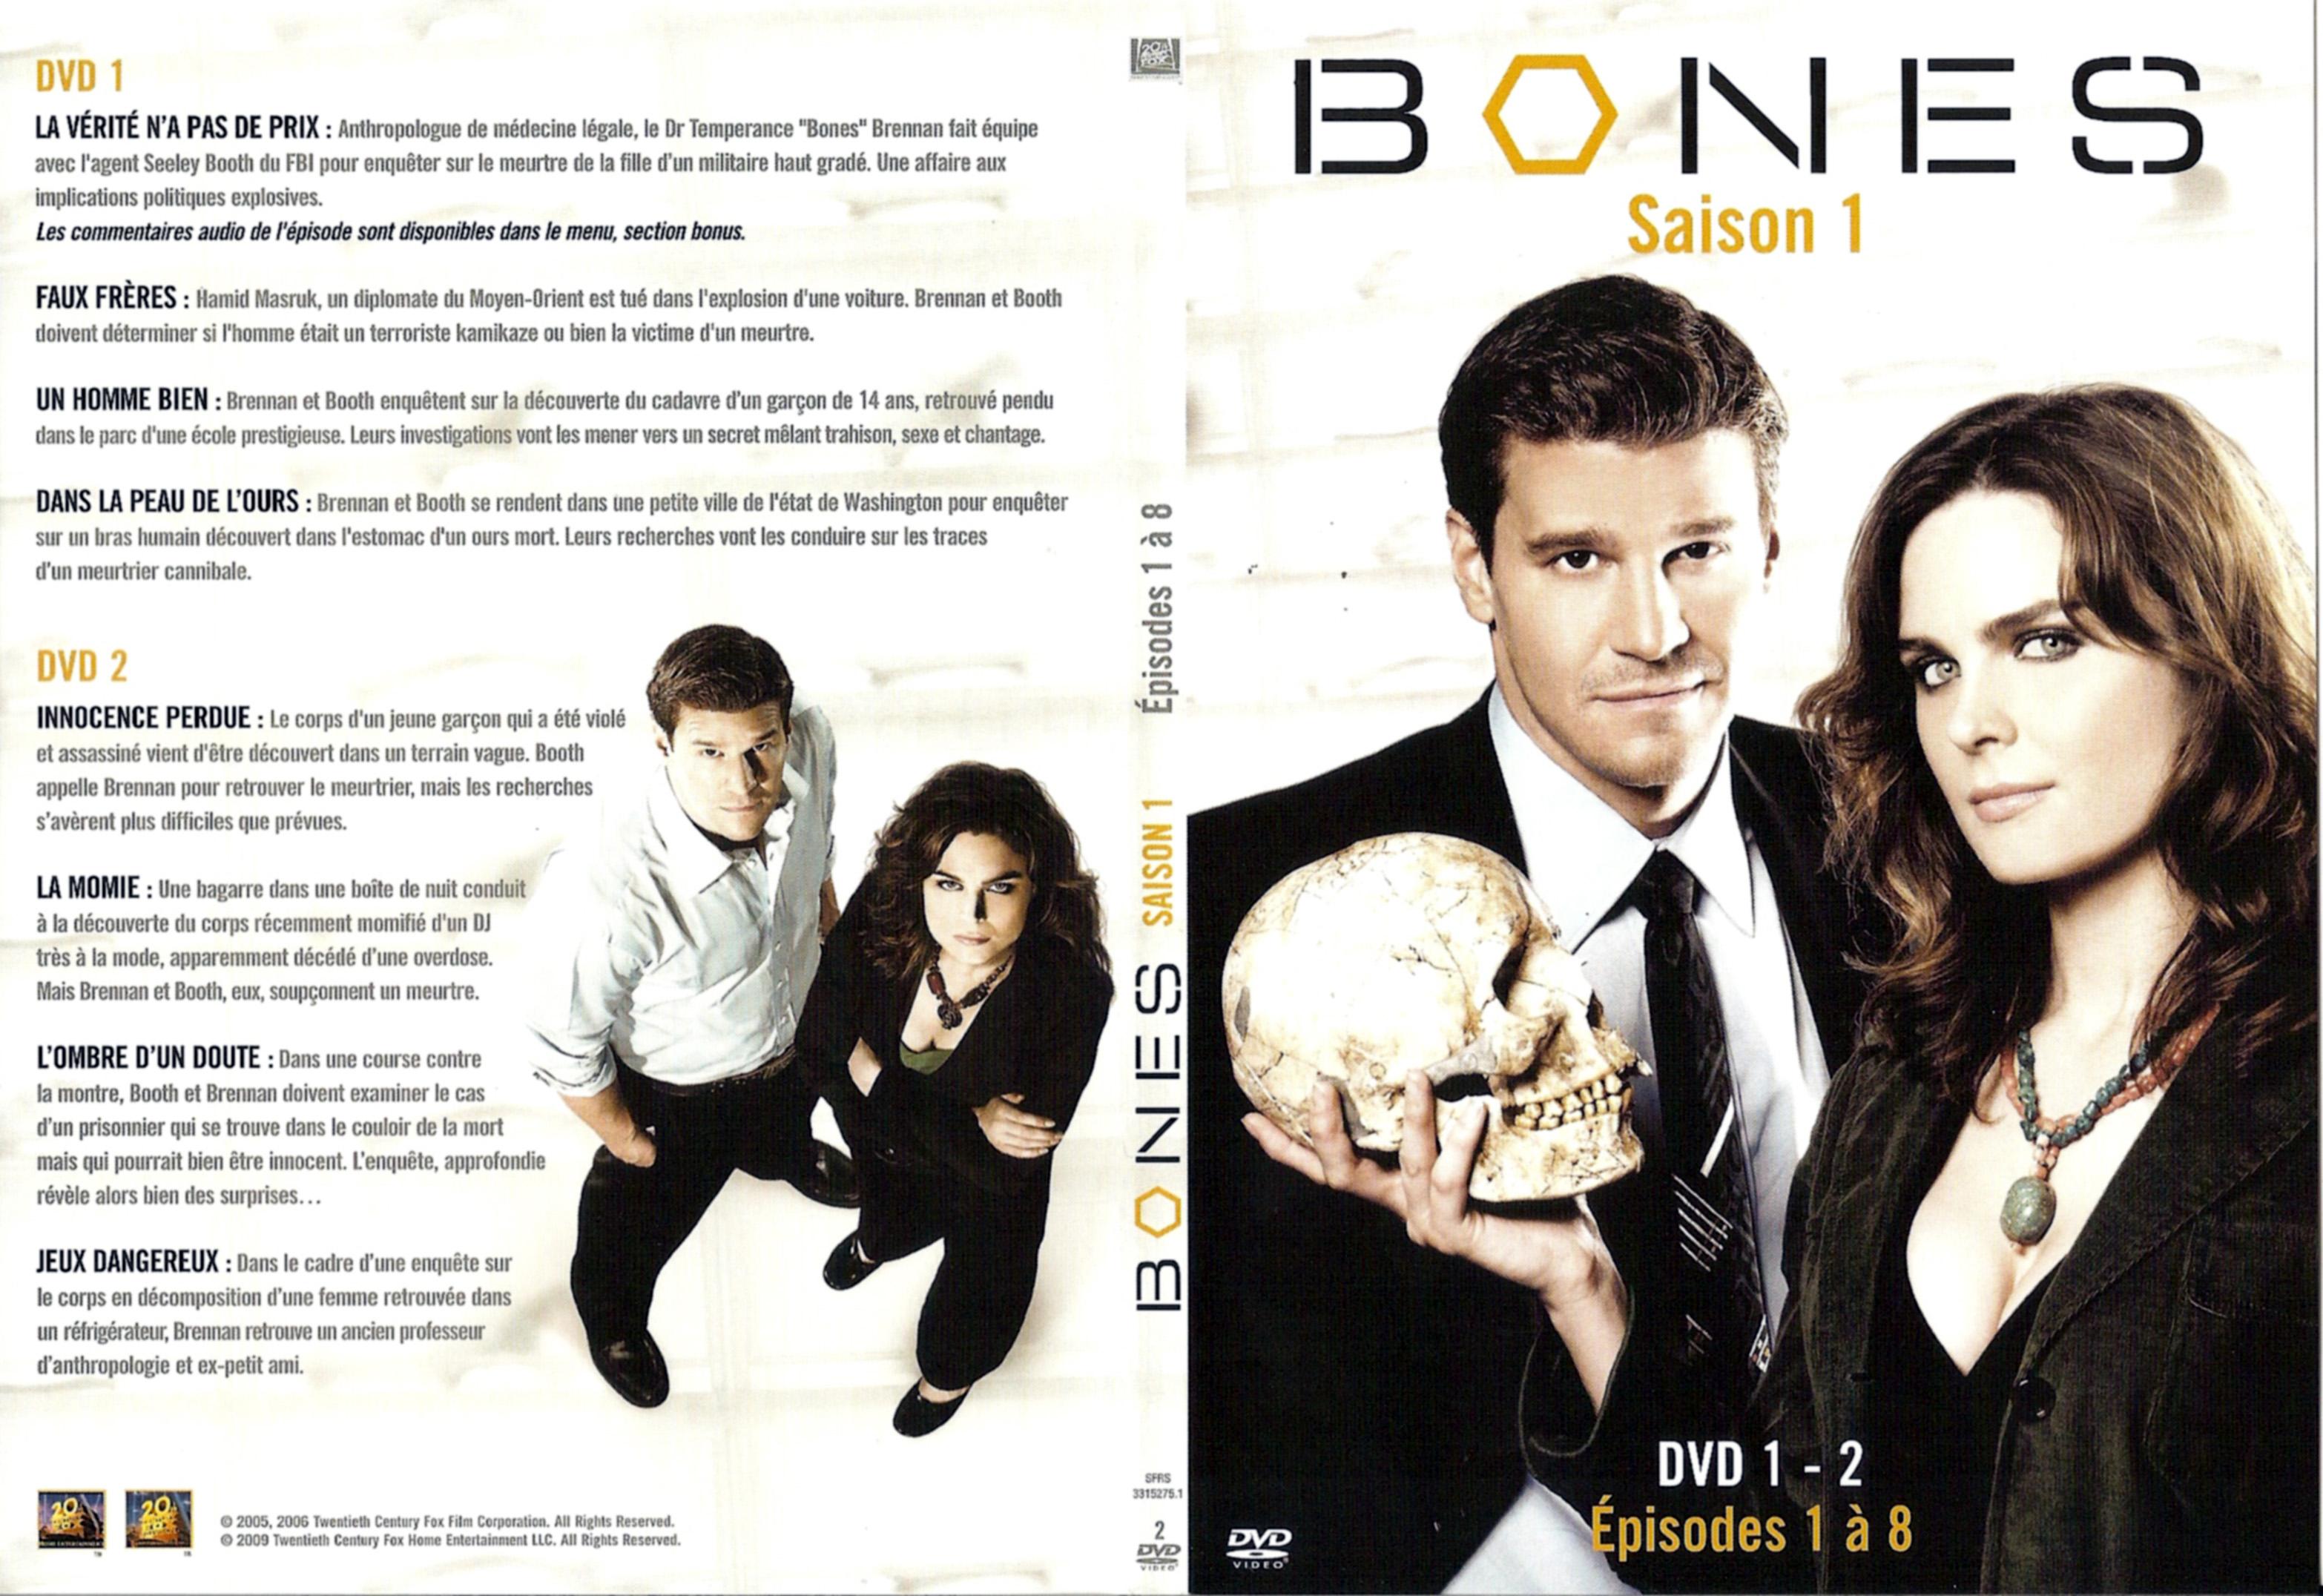 Jaquette DVD Bones Saison 1 DVD 1